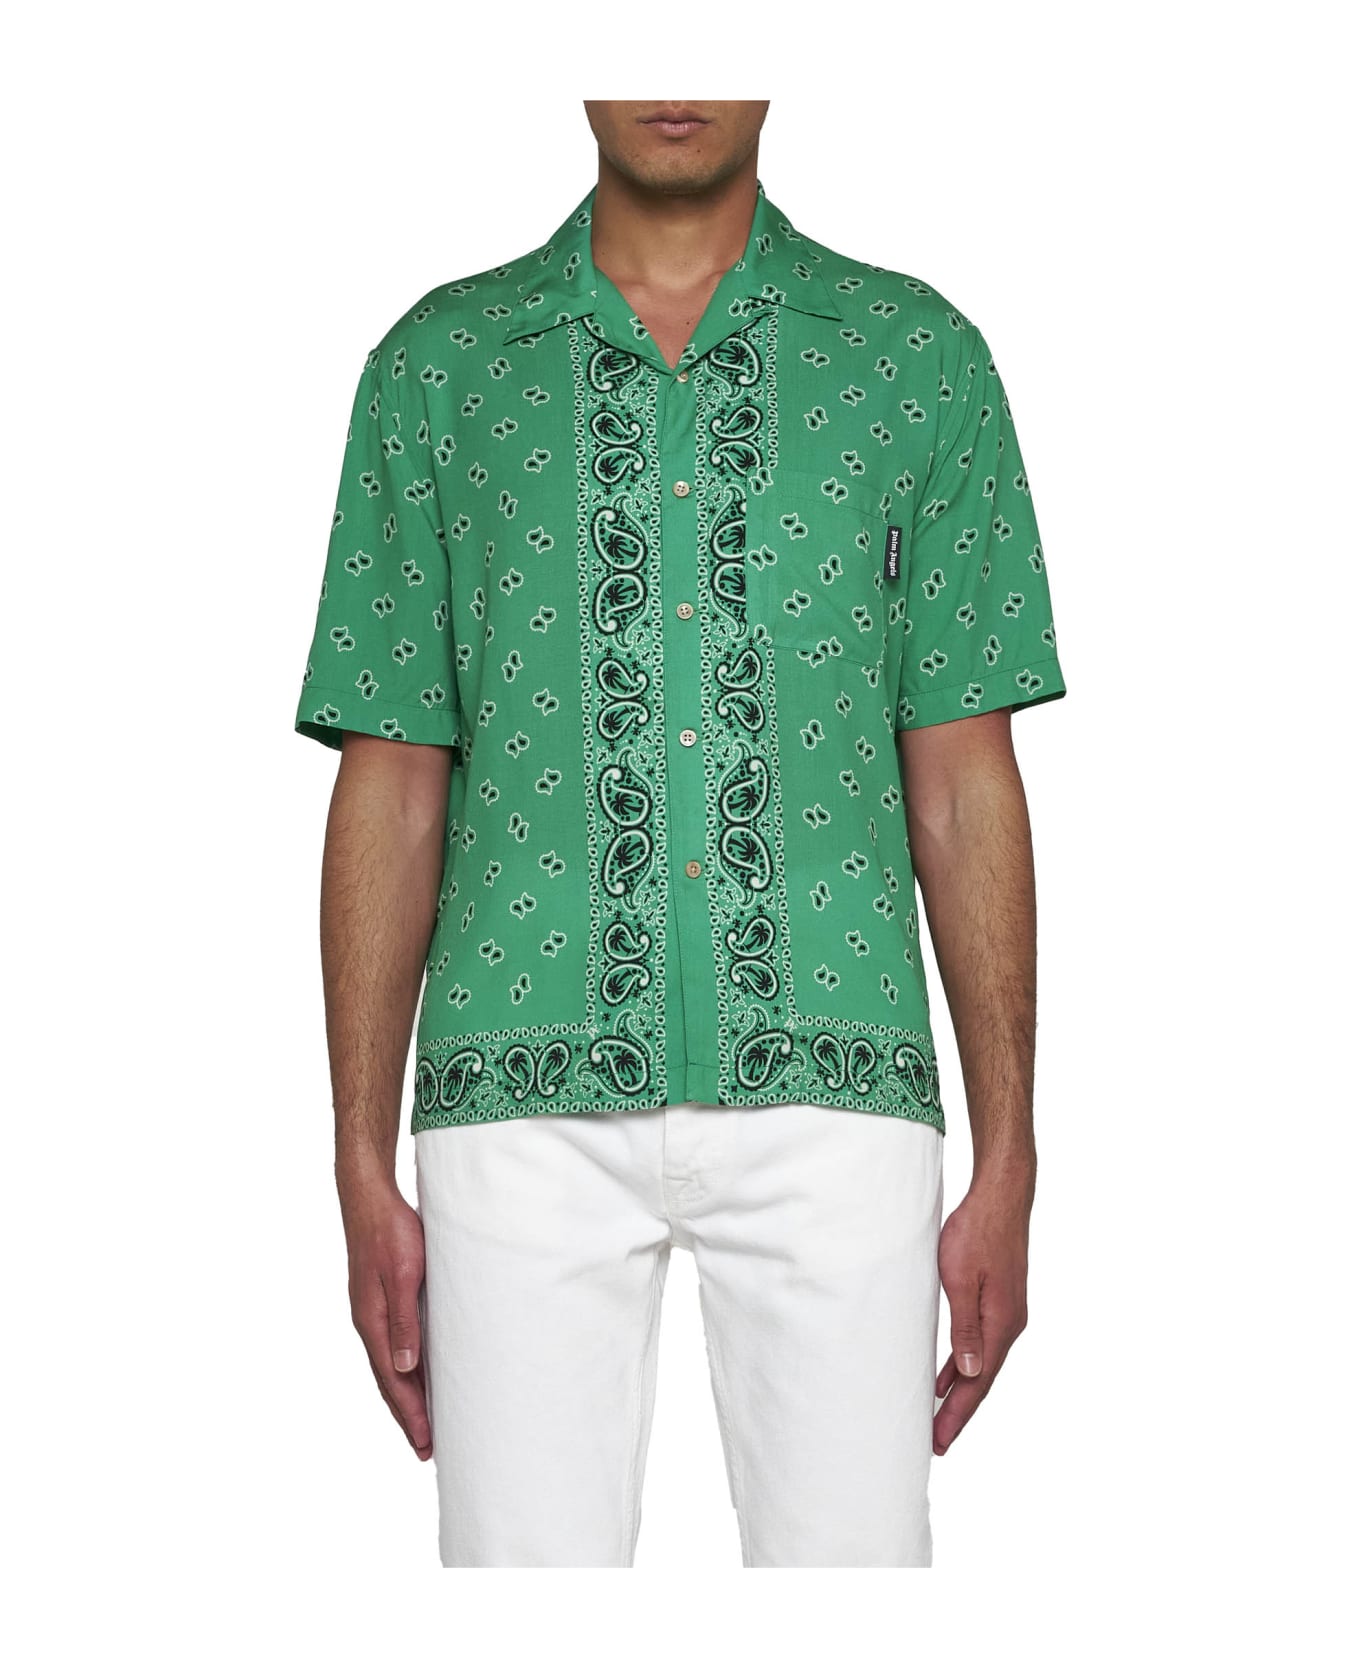 Palm Angels Shirt - Green green